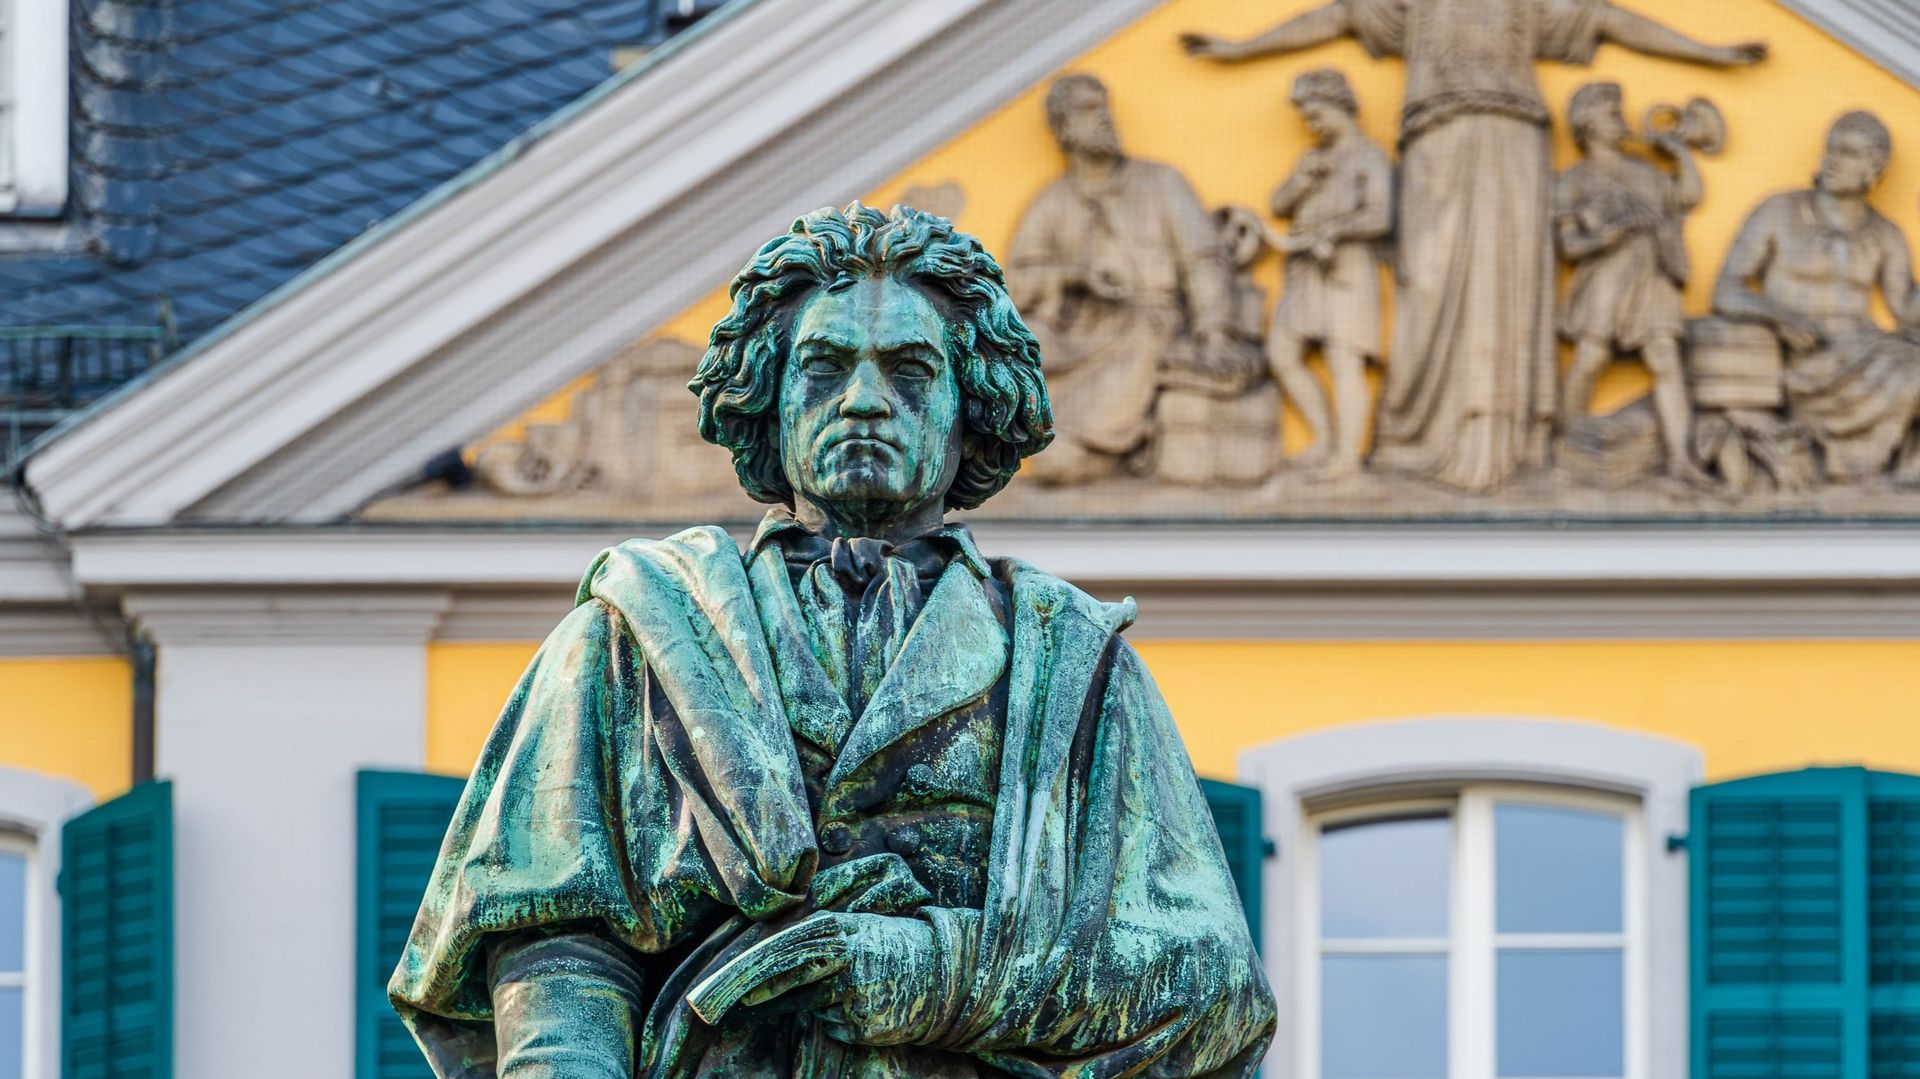 La statue de Beethoven, réalisée par Ernst Julius Hhnel et érigée à Bonn, va subir une campagne de restauration